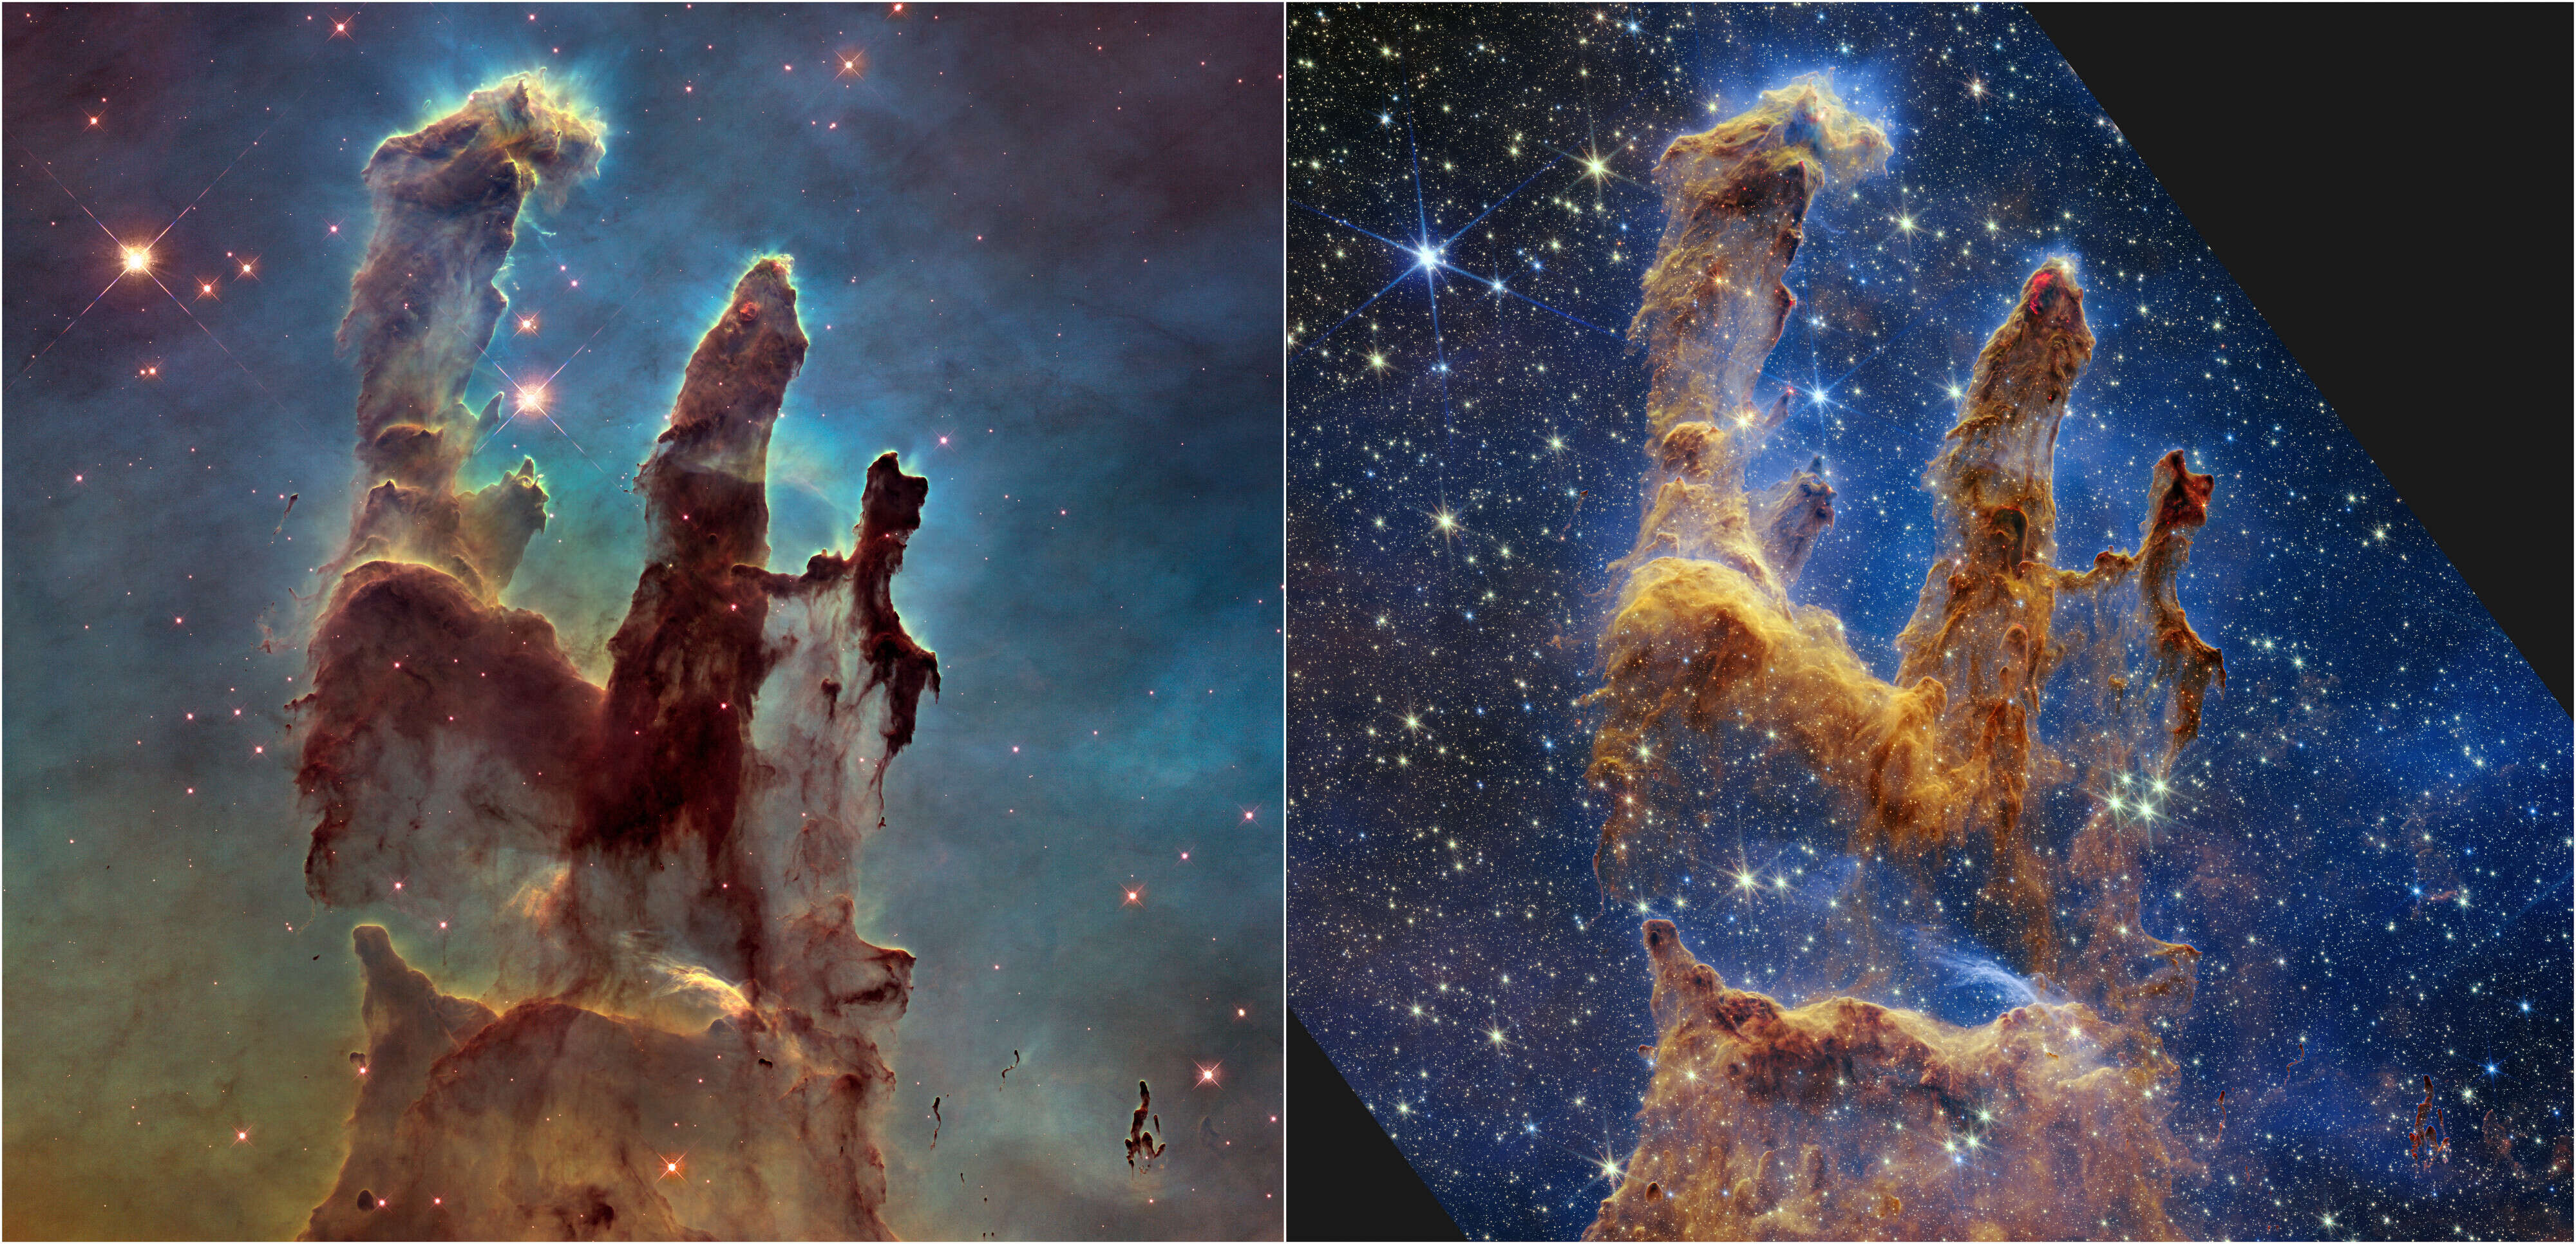 Le télescope spatial Hubble de la NASA/ESA a rendu les piliers de la création célèbres avec sa première image en 1995, mais a revisité la scène en 2014 pour révéler une vue plus nette et plus large en lumière visible, illustrée ci-dessus à gauche.